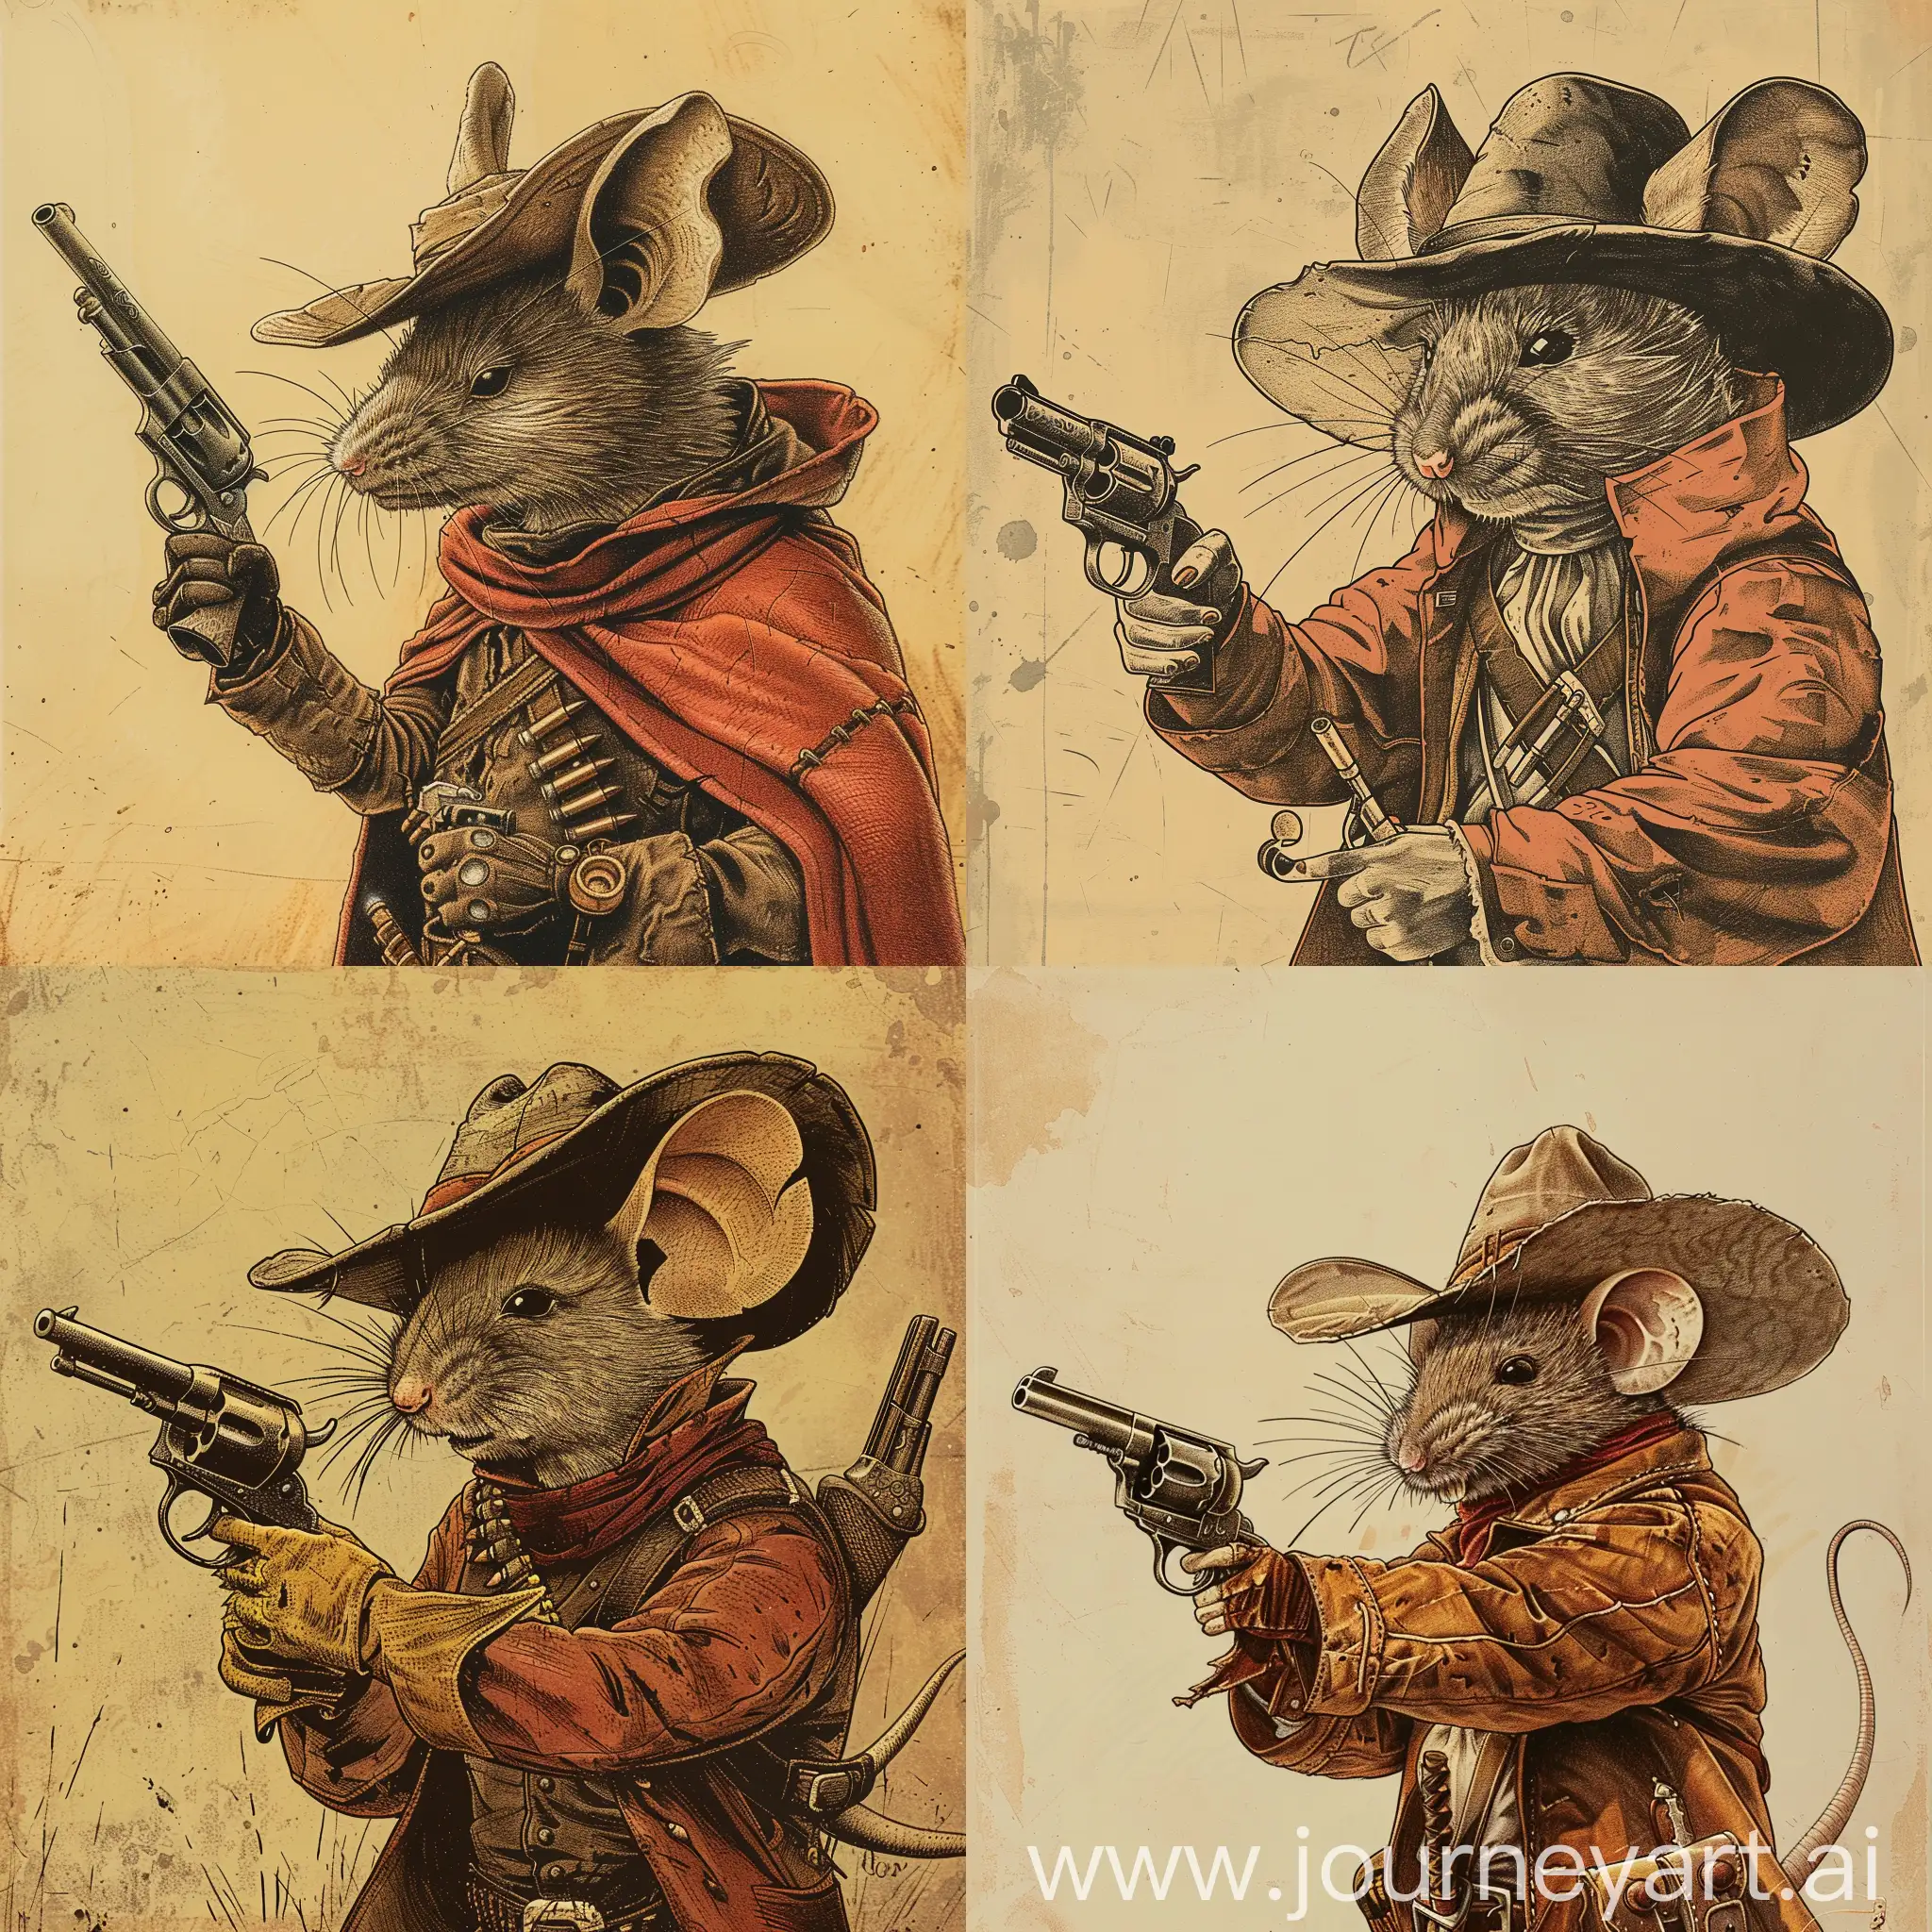 1970s-Dark-Fantasy-Mouse-Gunslinger-Art